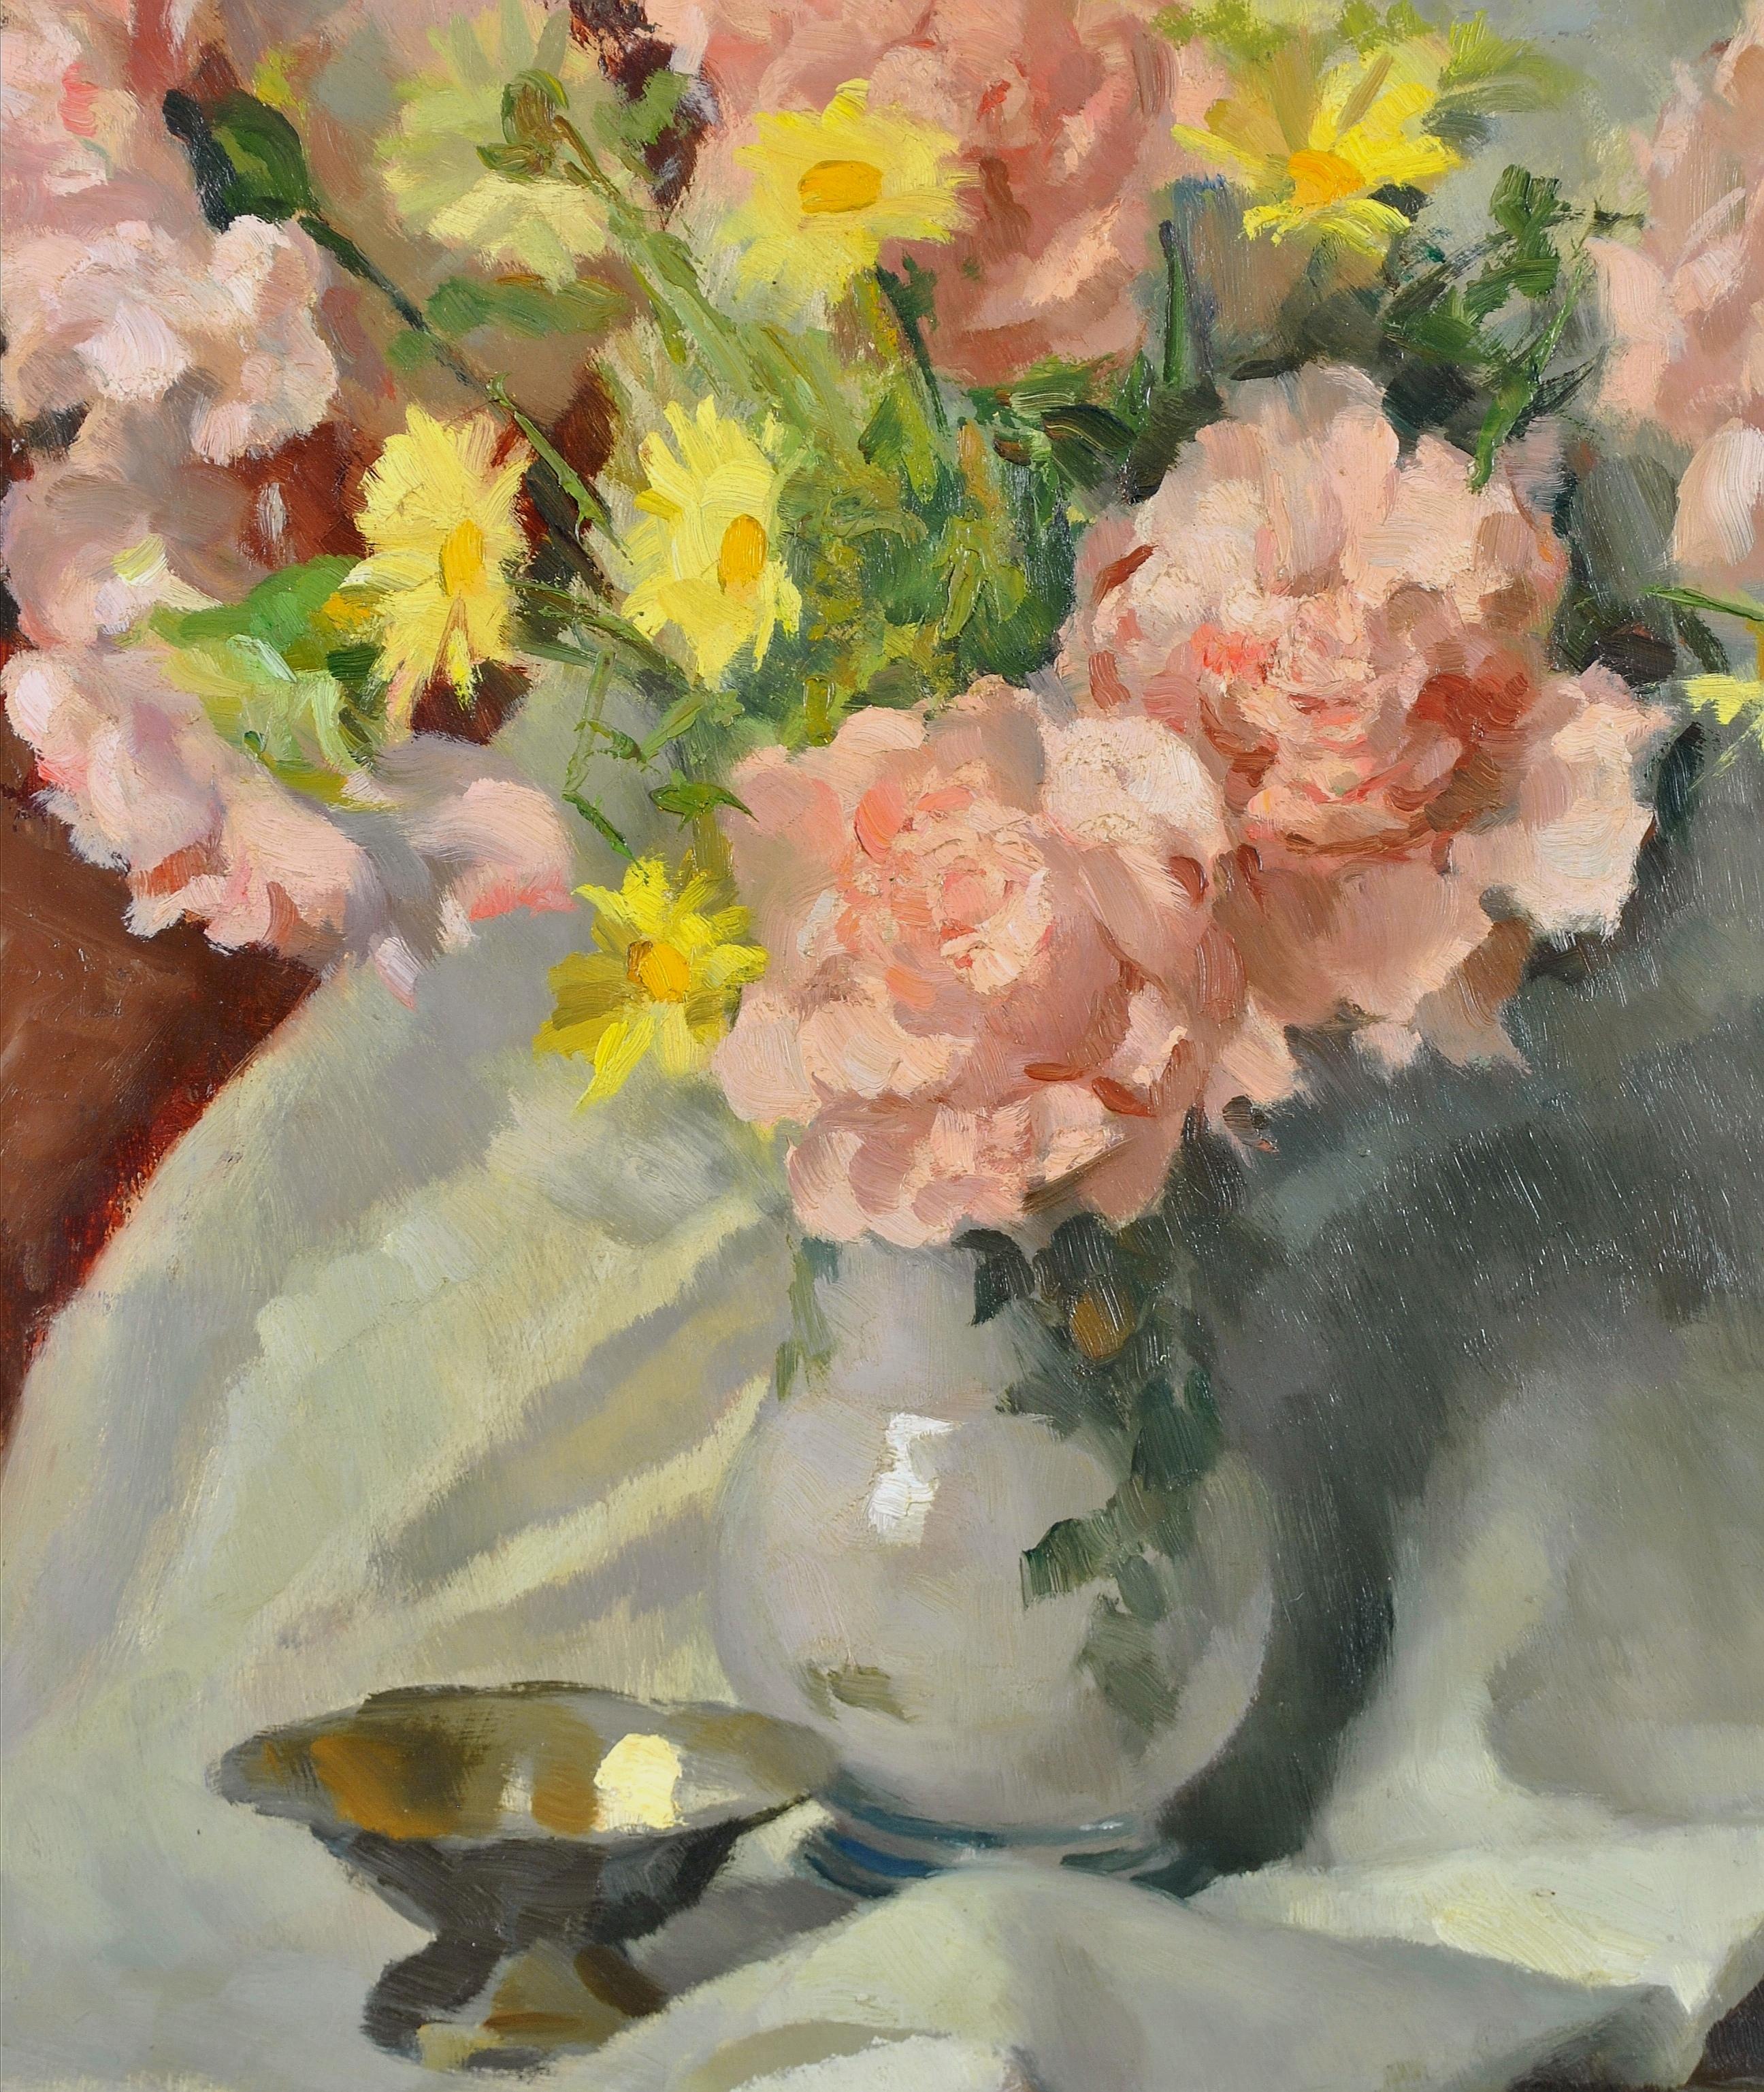 Magnifique huile impressionniste sur panneau des années 1930 représentant des roses et des fleurs sauvages dans un vase par le peintre italien Carlo Marzorati.

Travail d'excellente qualité en très bon état d'origine. Signée en bas à droite et